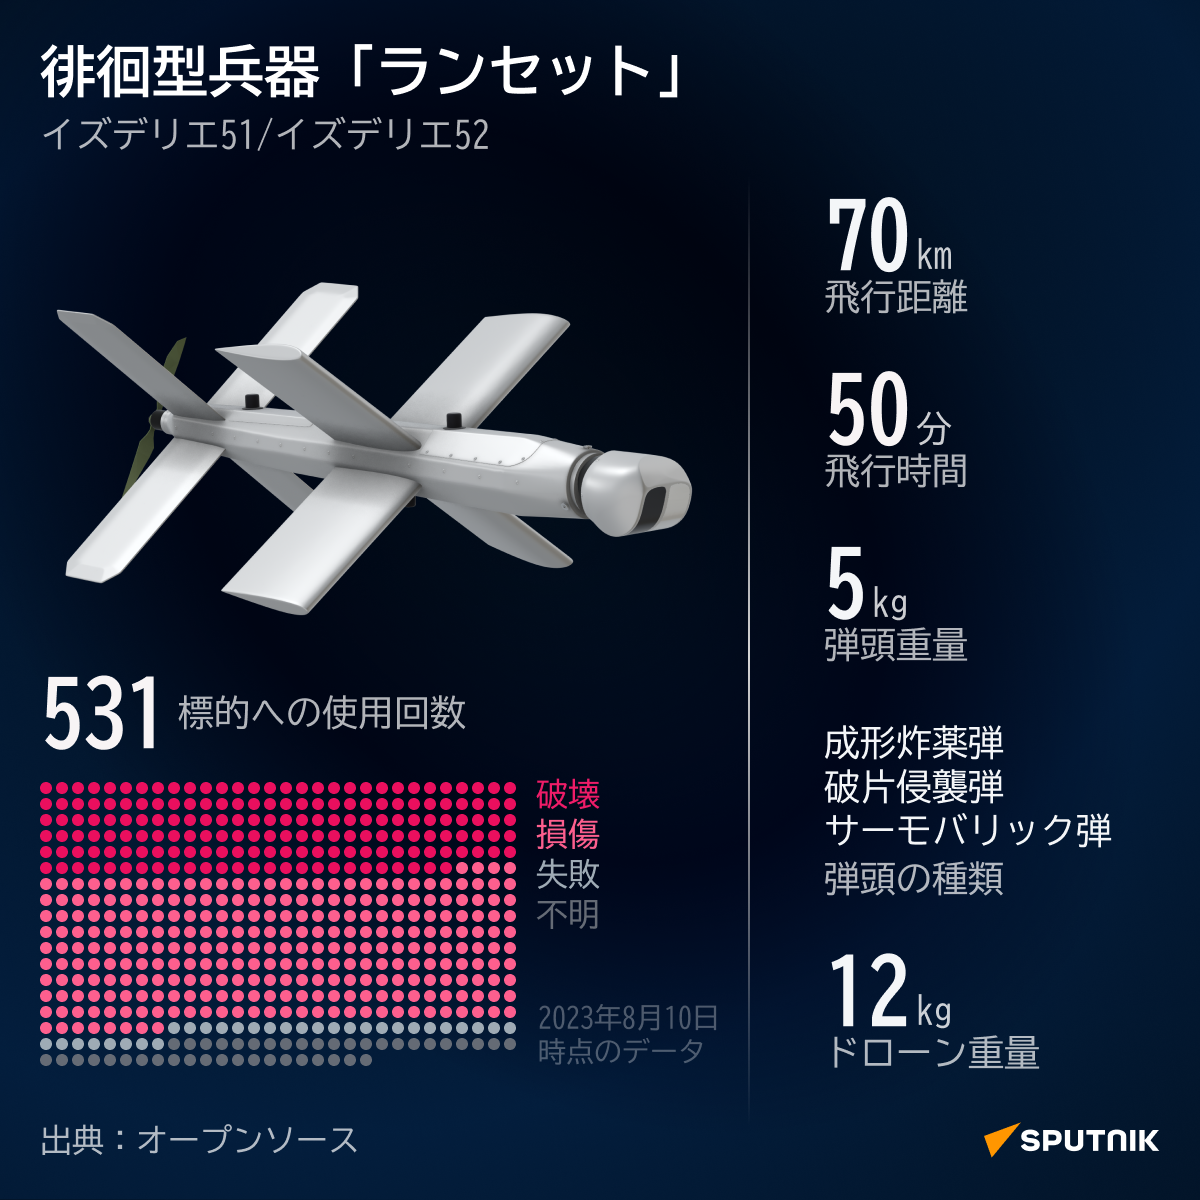 徘徊型兵器「ランセット」 - Sputnik 日本